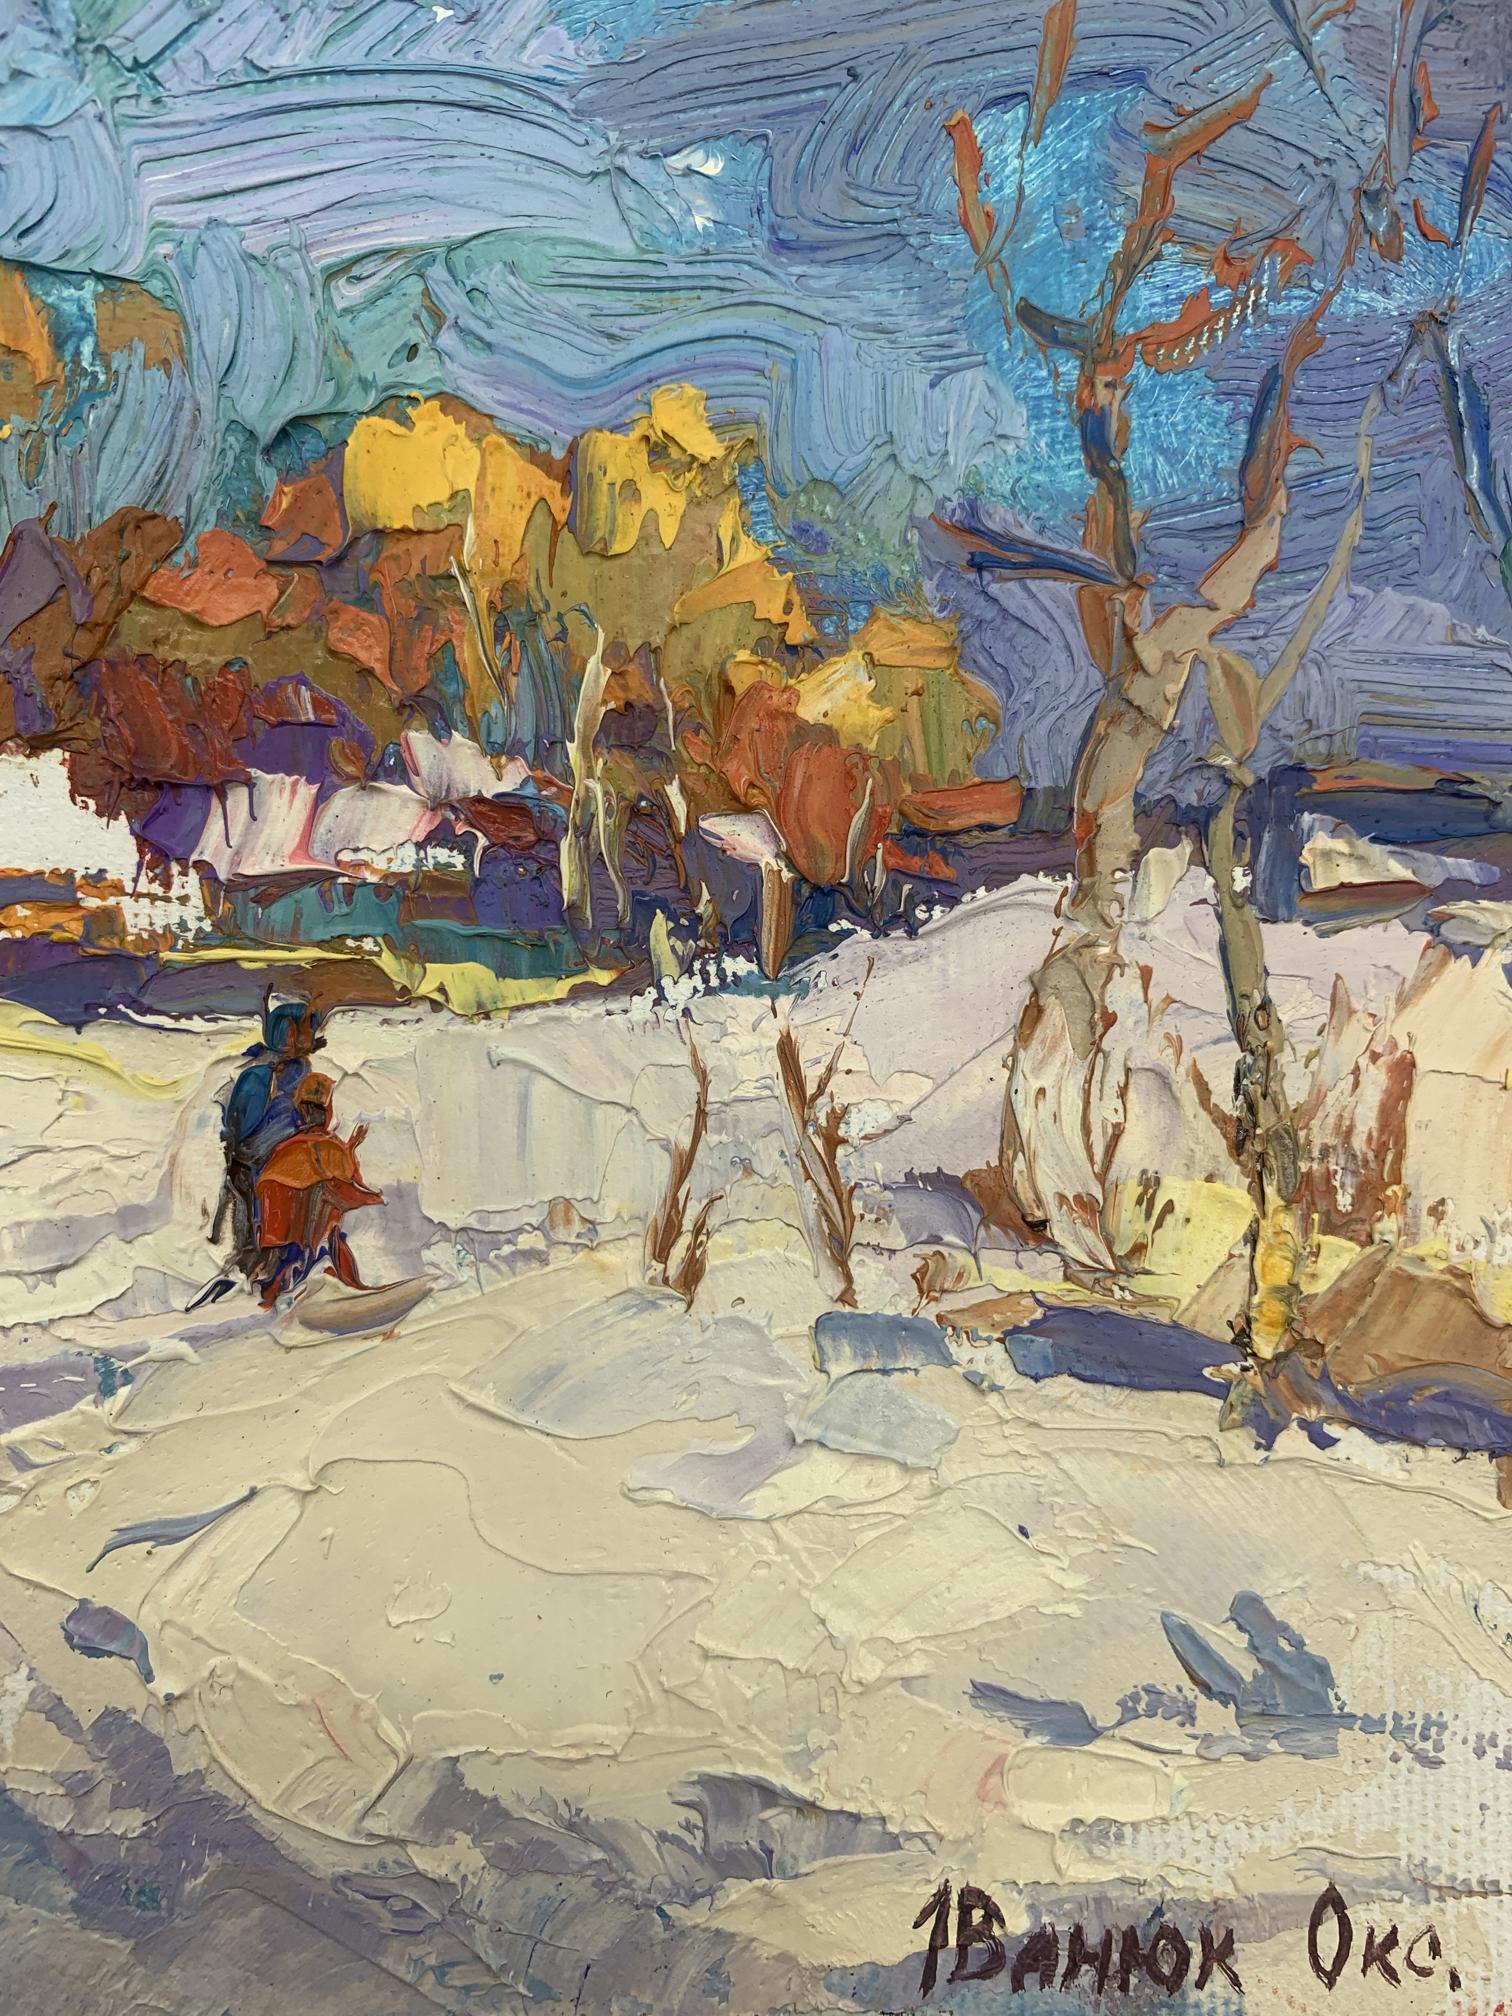 Oksana Ivanyuk's oil masterpiece: "Sunlight in Winter"